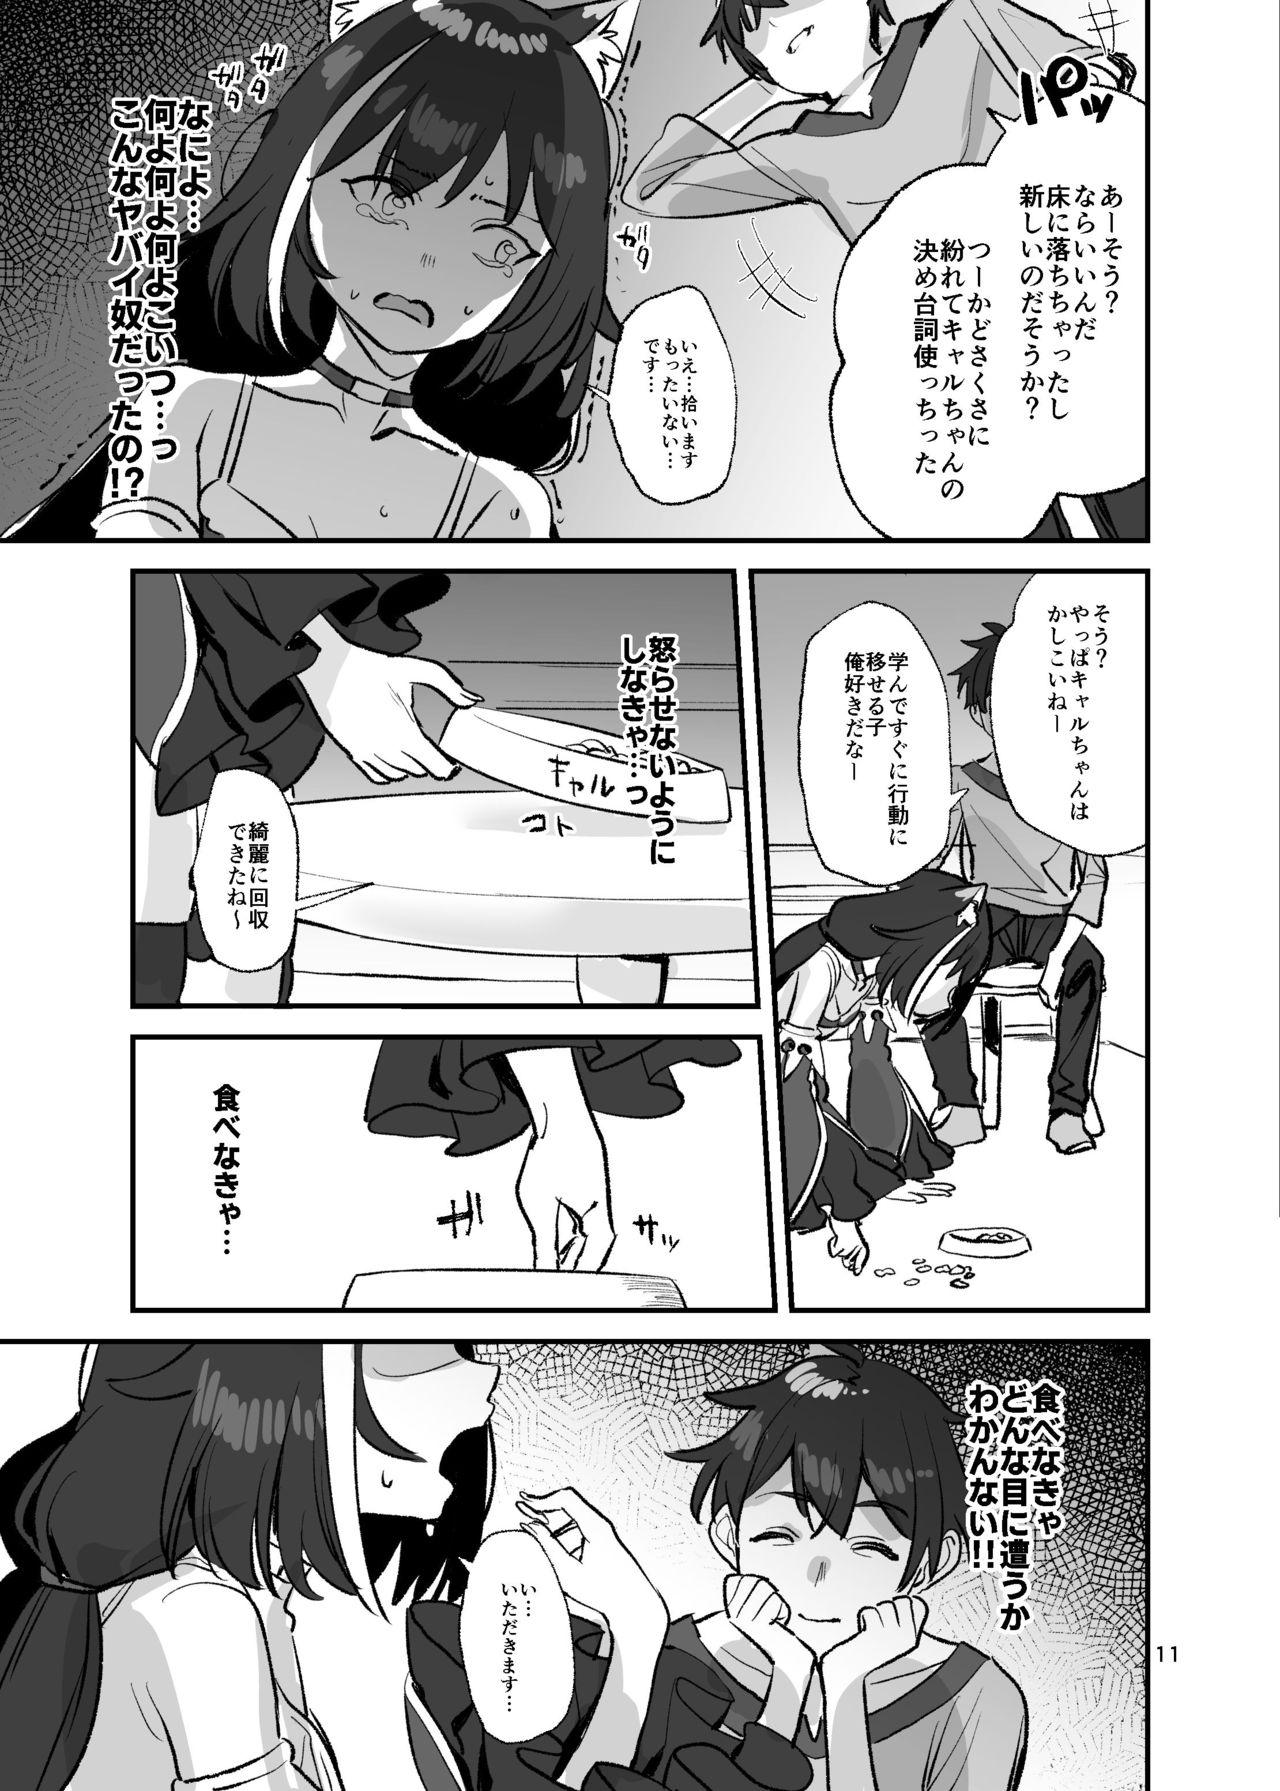 Old Young Datte Kyaru-chan Uragirimono da yo ne - Princess connect Spit - Page 10